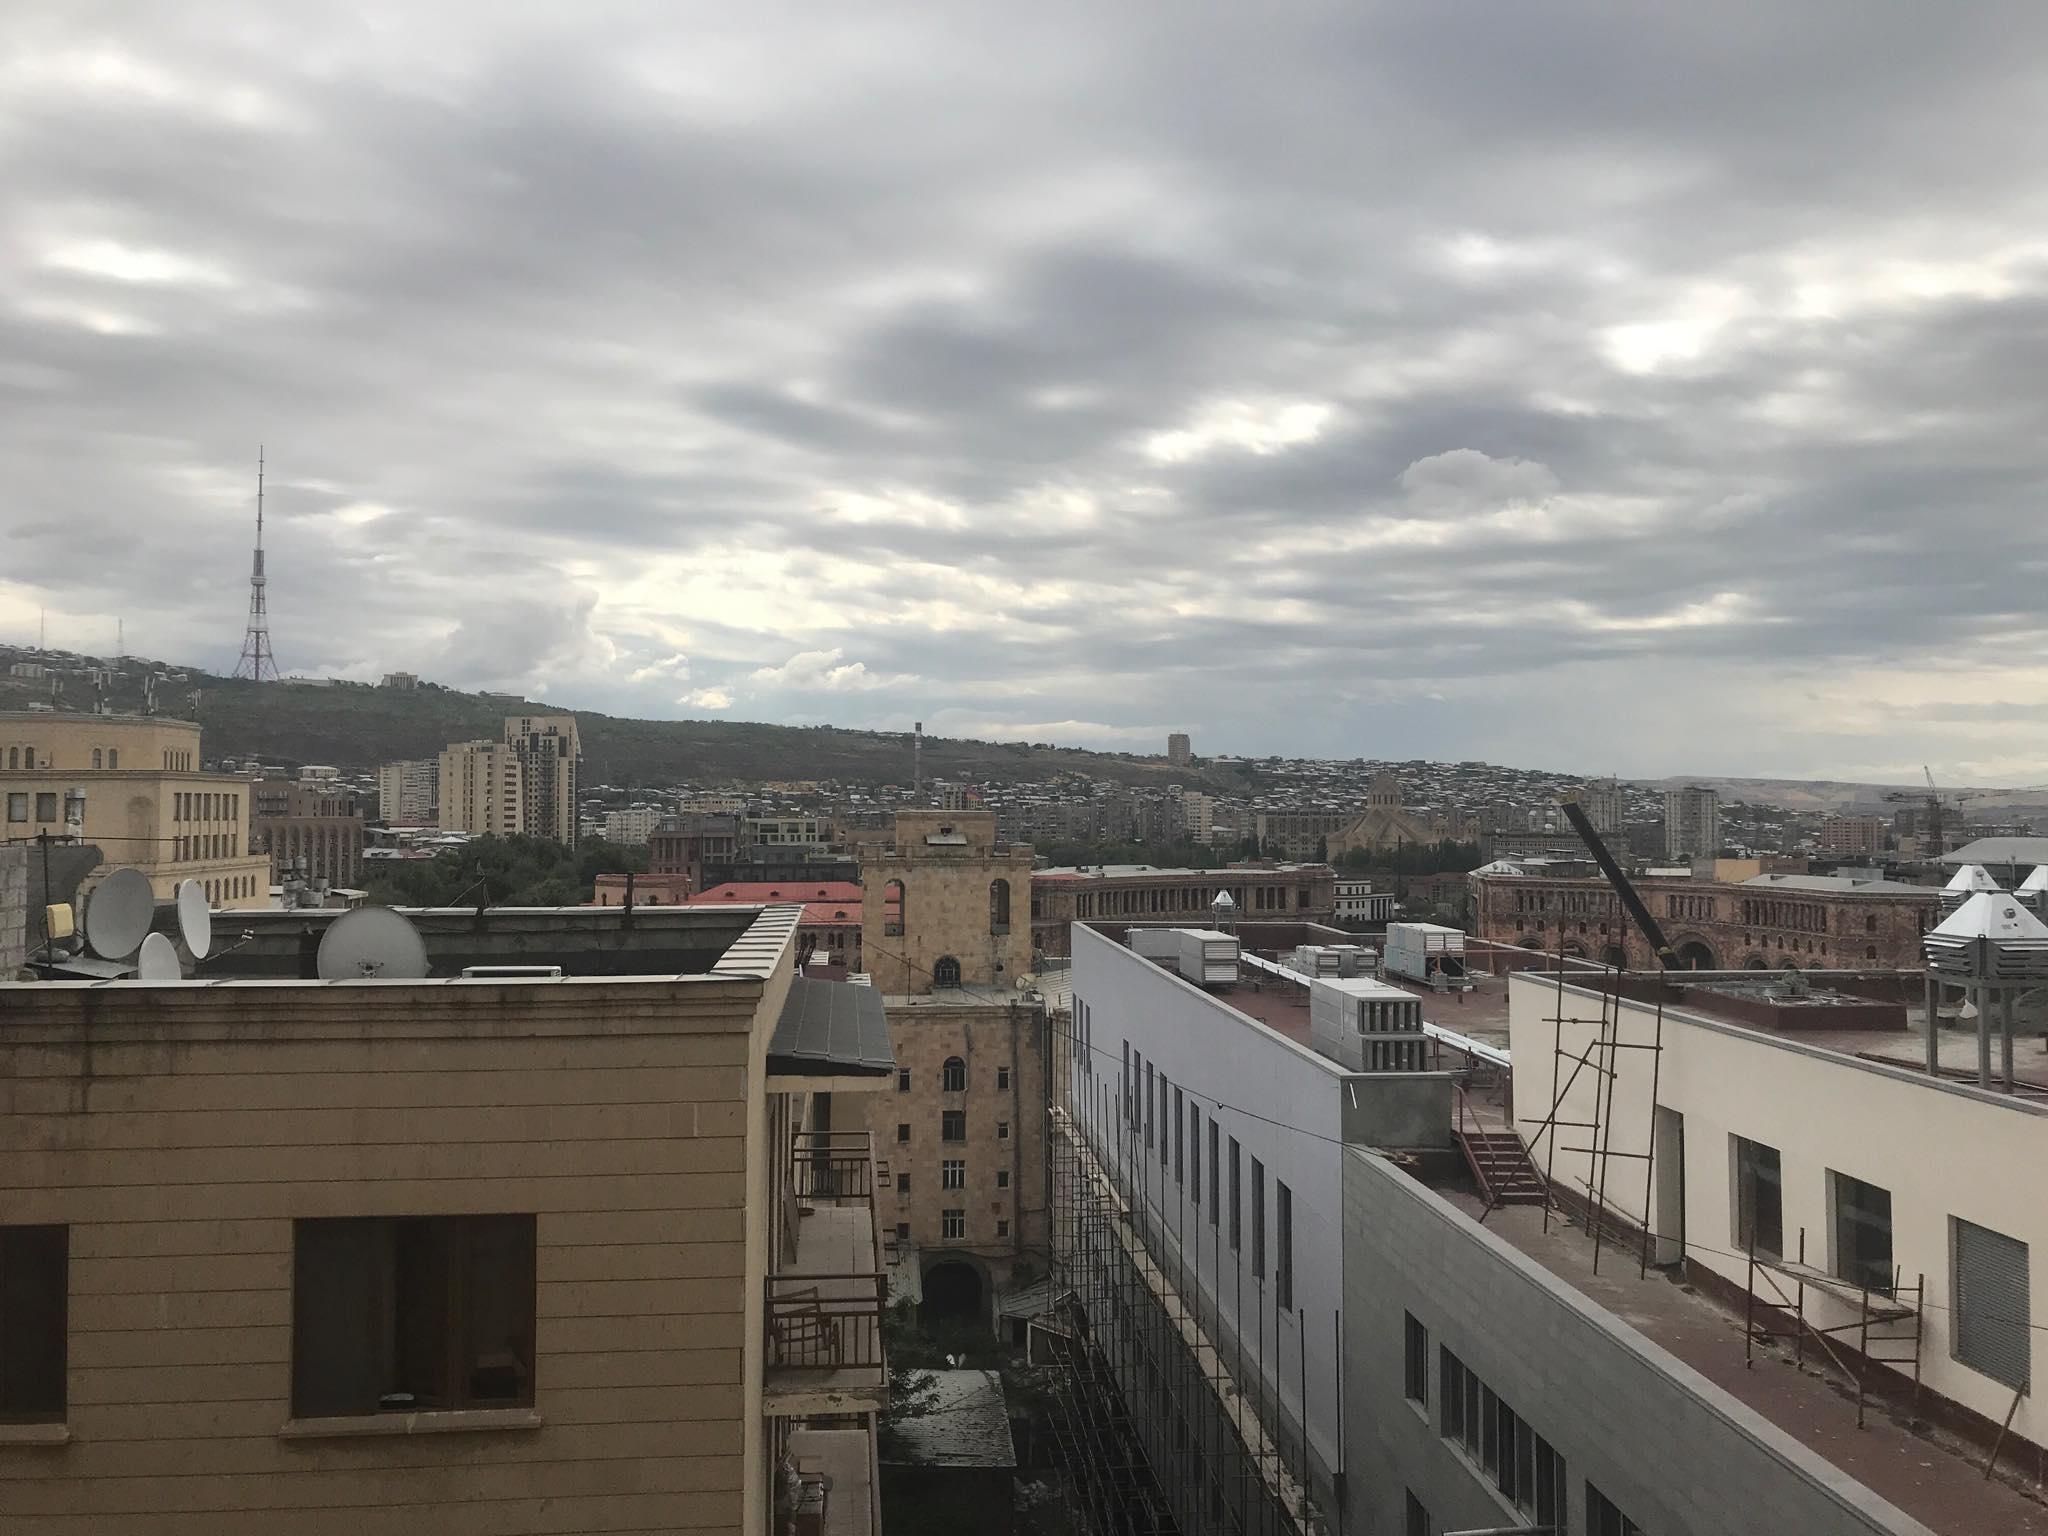 Kiša ohladila planinski zrak u Jerevanu: Pogodna klima za "Zmajeve"